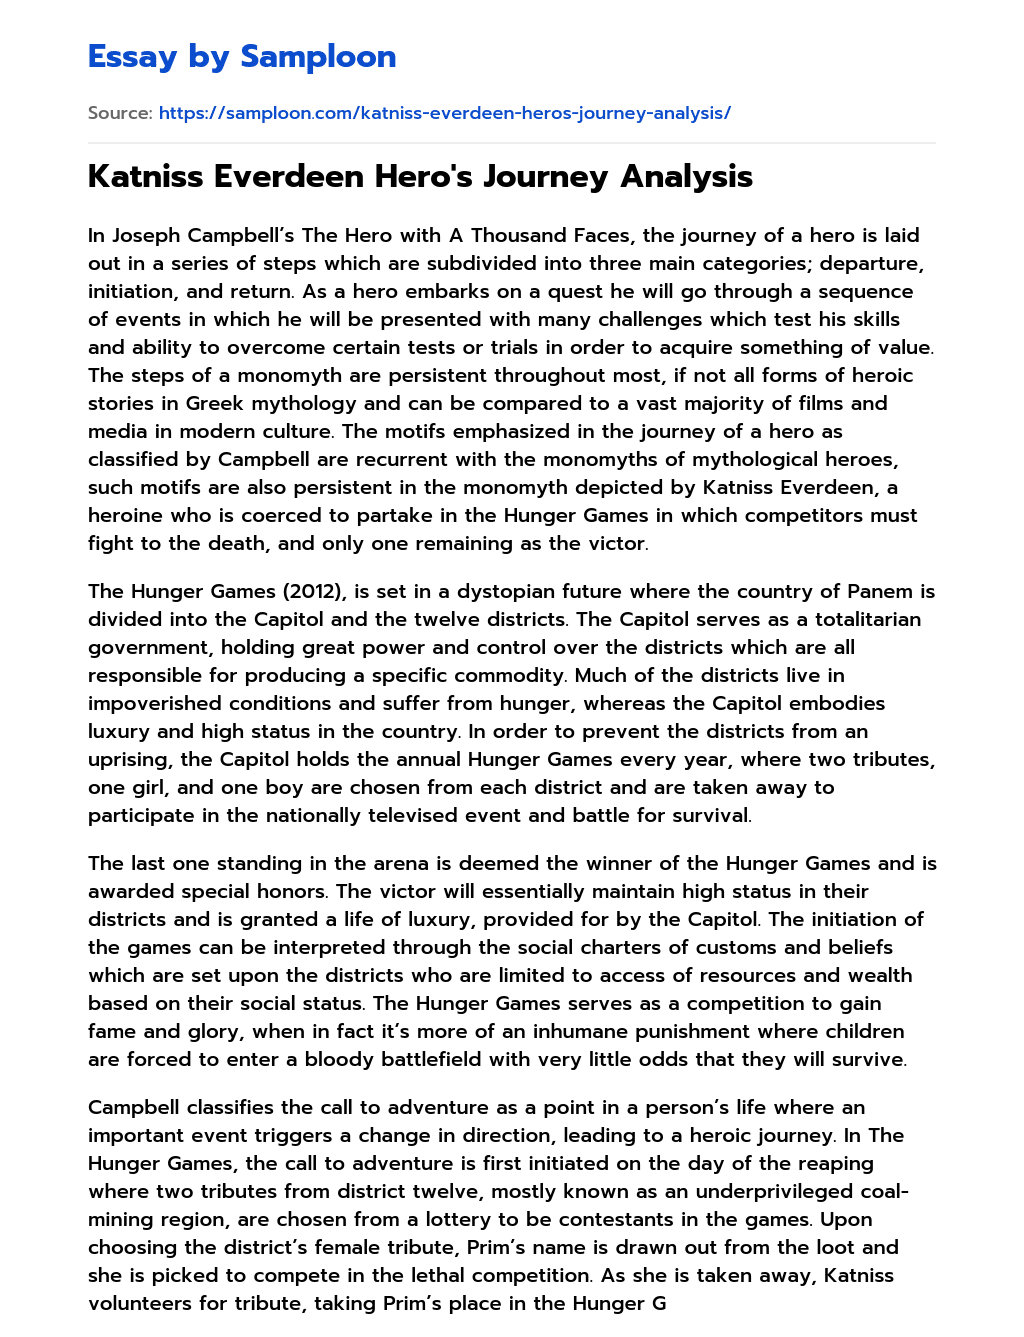 Katniss Everdeen Hero’s Journey Analysis essay